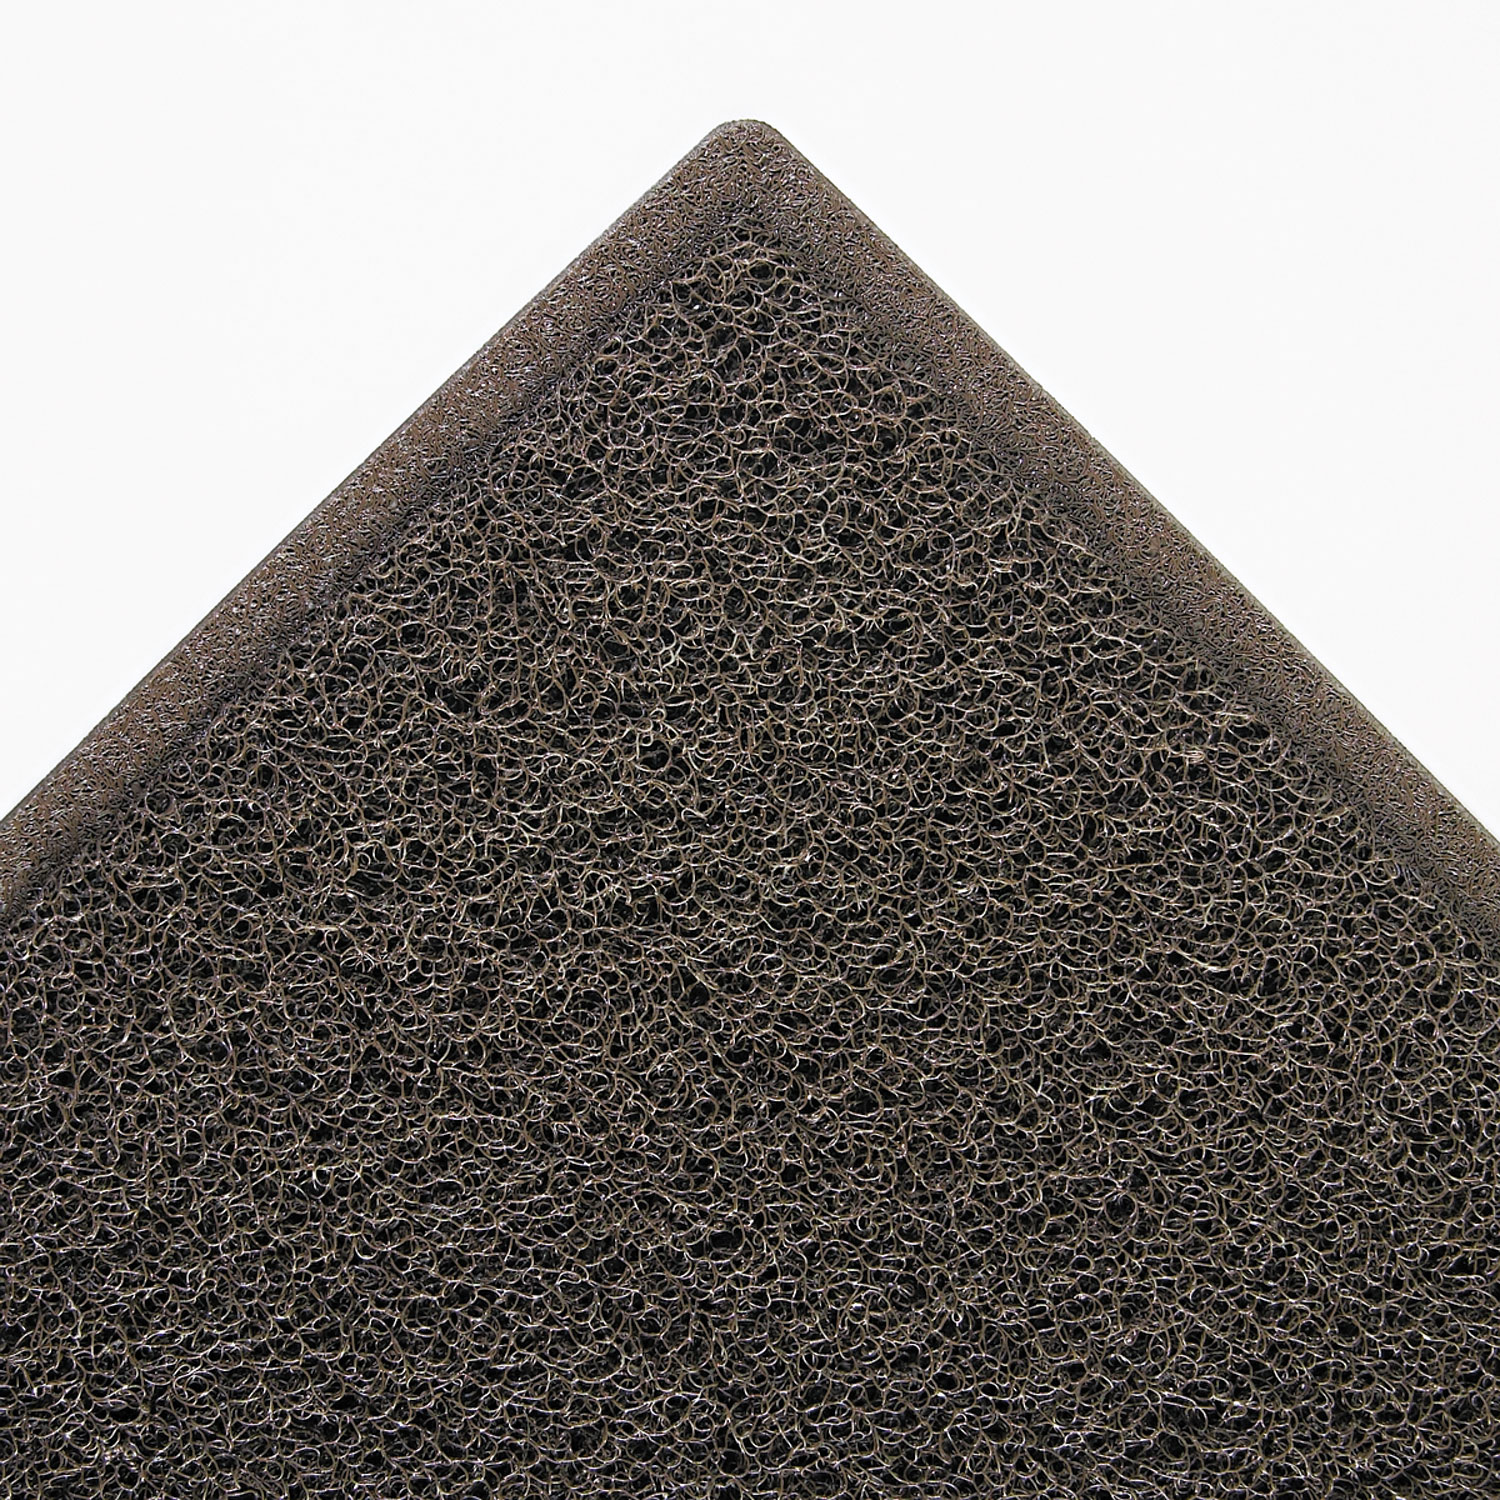  3M 6050 Dirt Stop Scraper Mat, Polypropylene, 48 x 72, Chestnut Brown (MMM34840) 